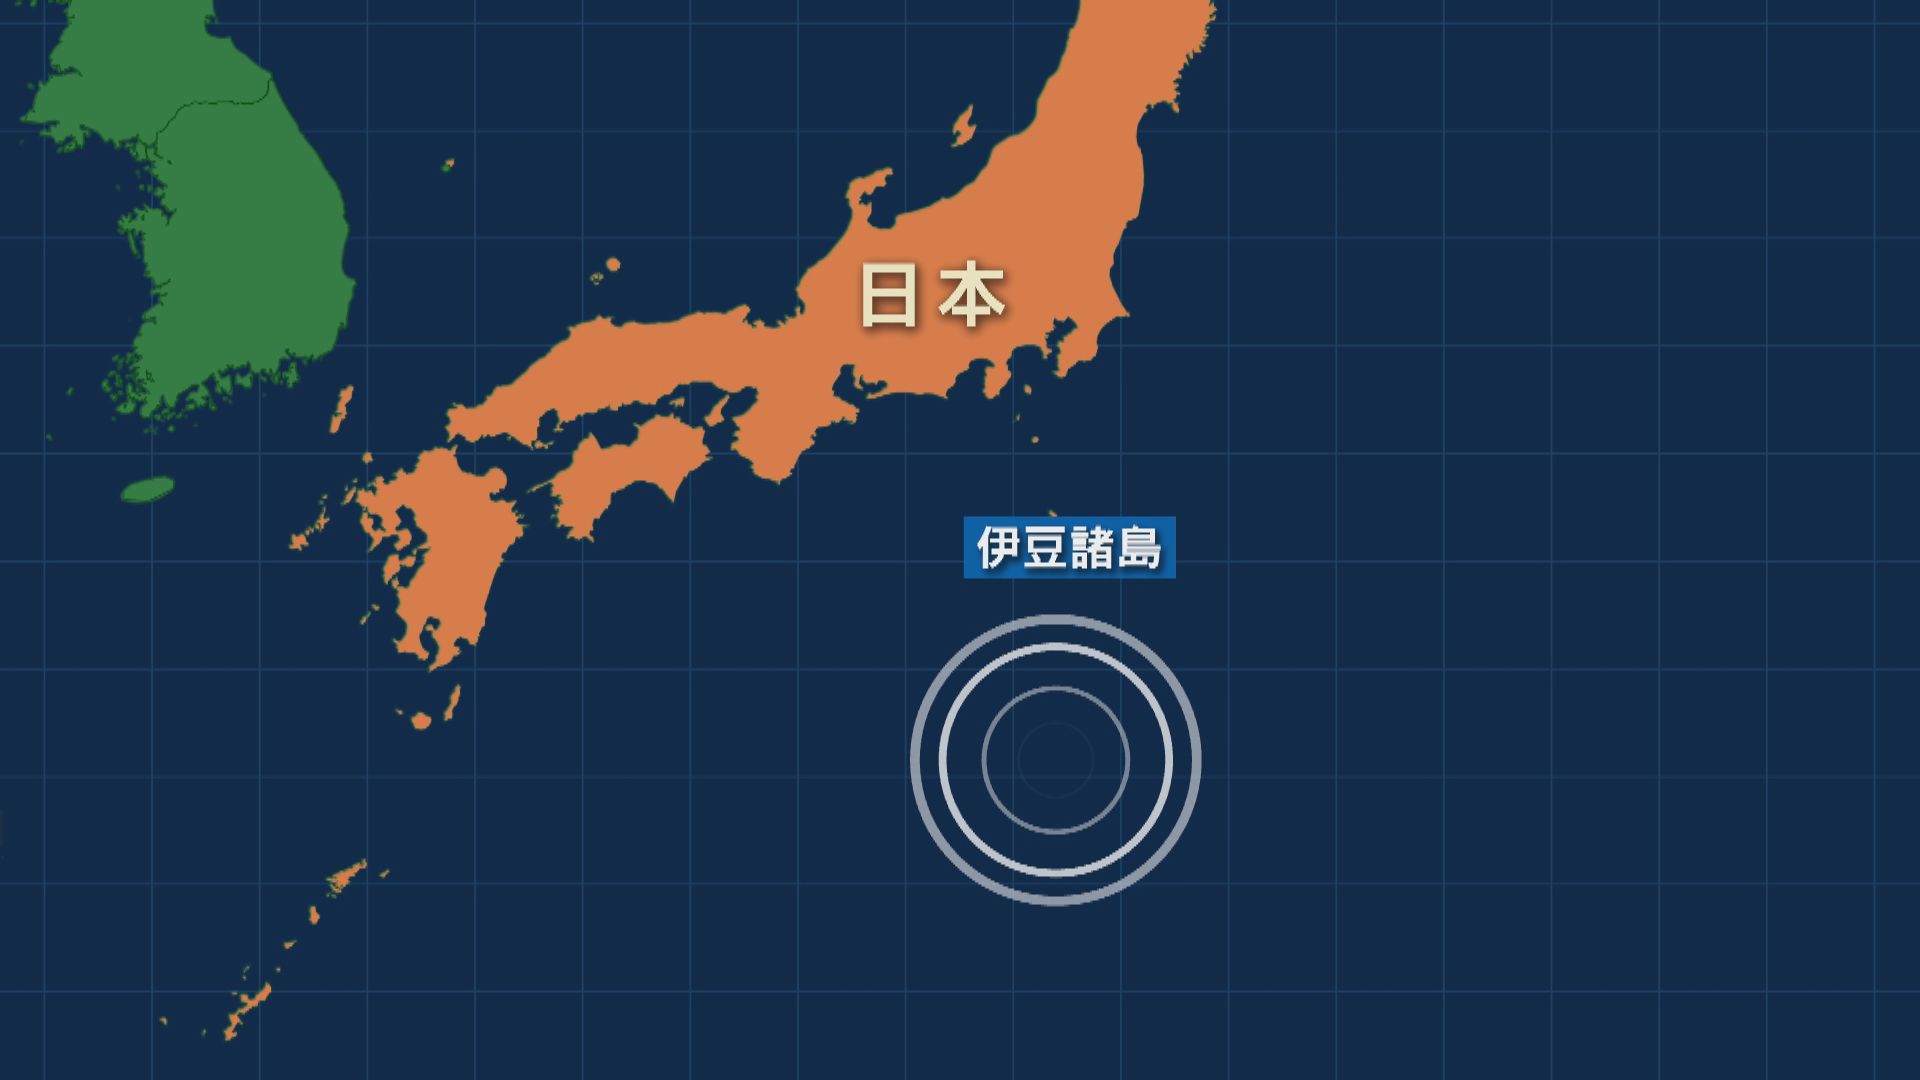 日本伊豆諸島附近海域發生地震 當局發出海嘯注意警報